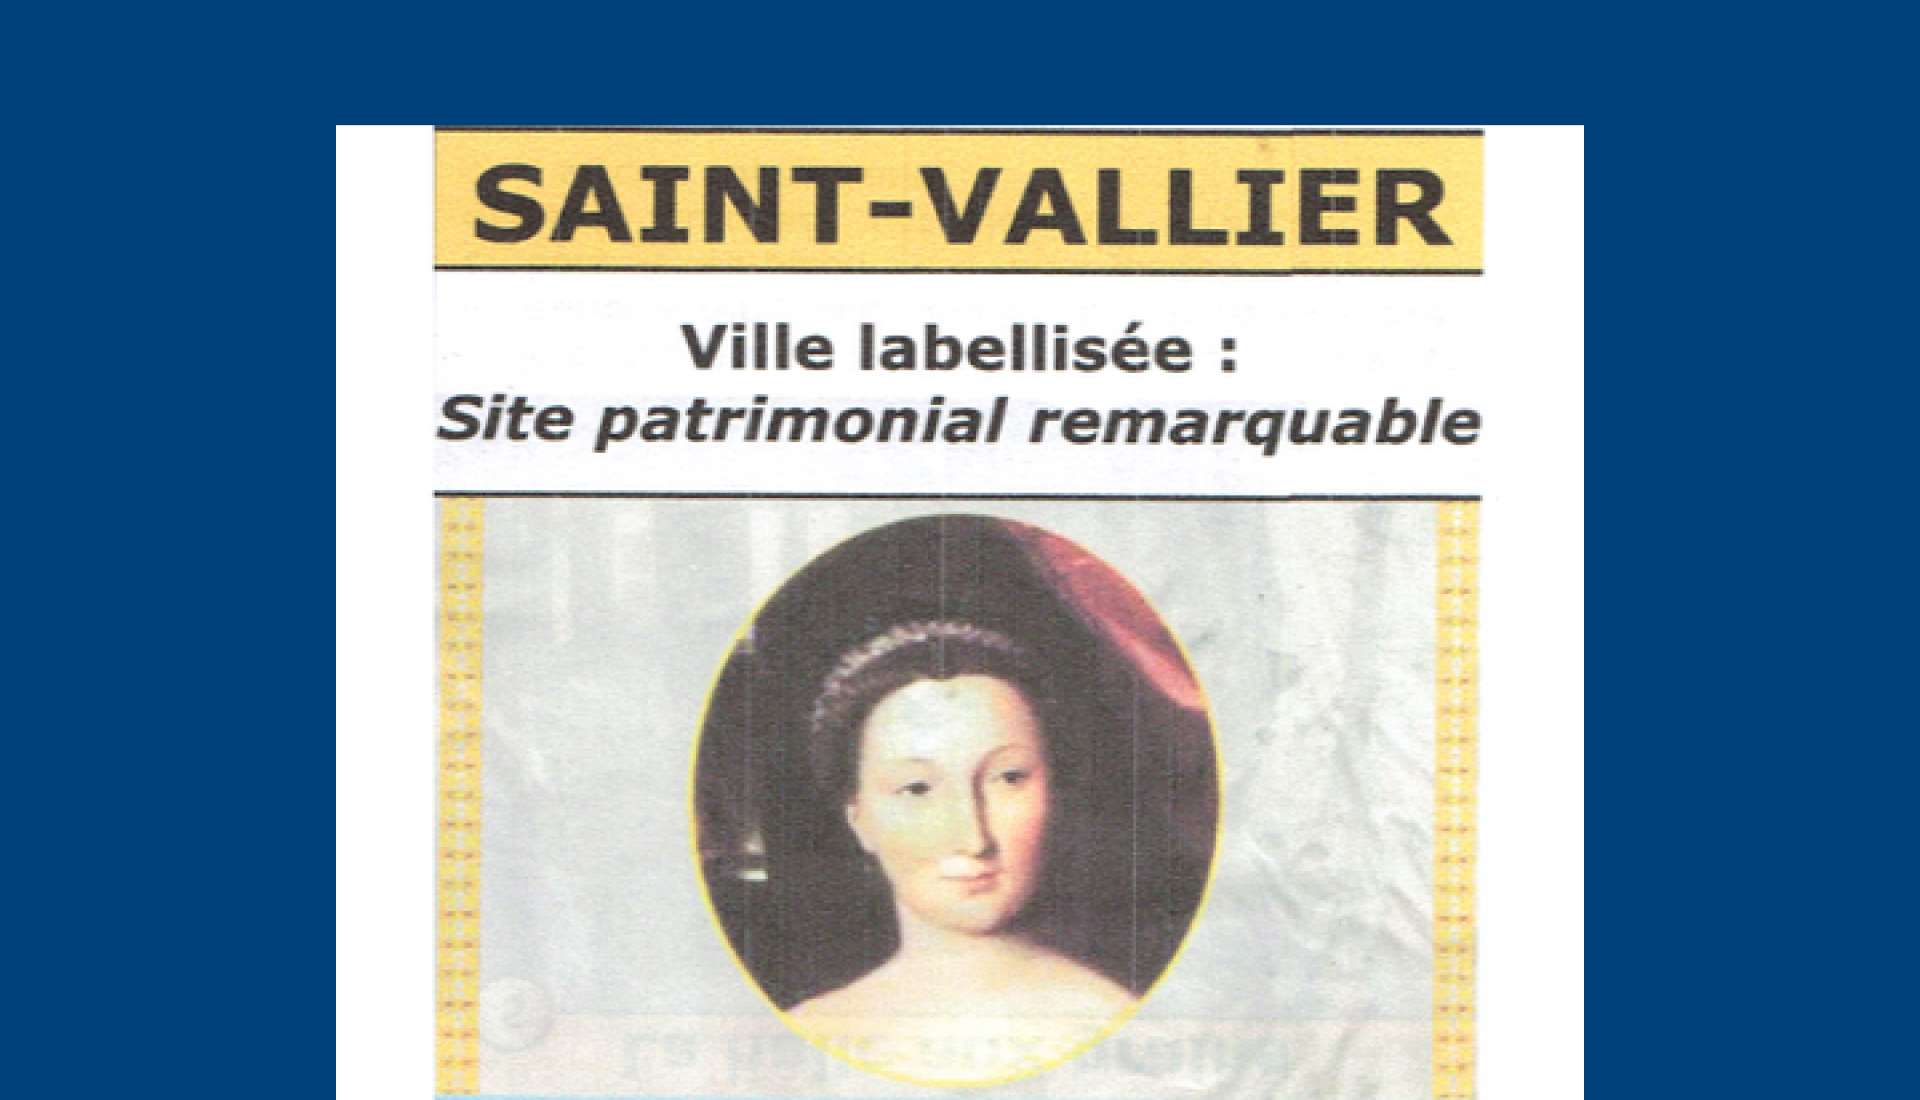 Saint-Vallier et son patrimoine